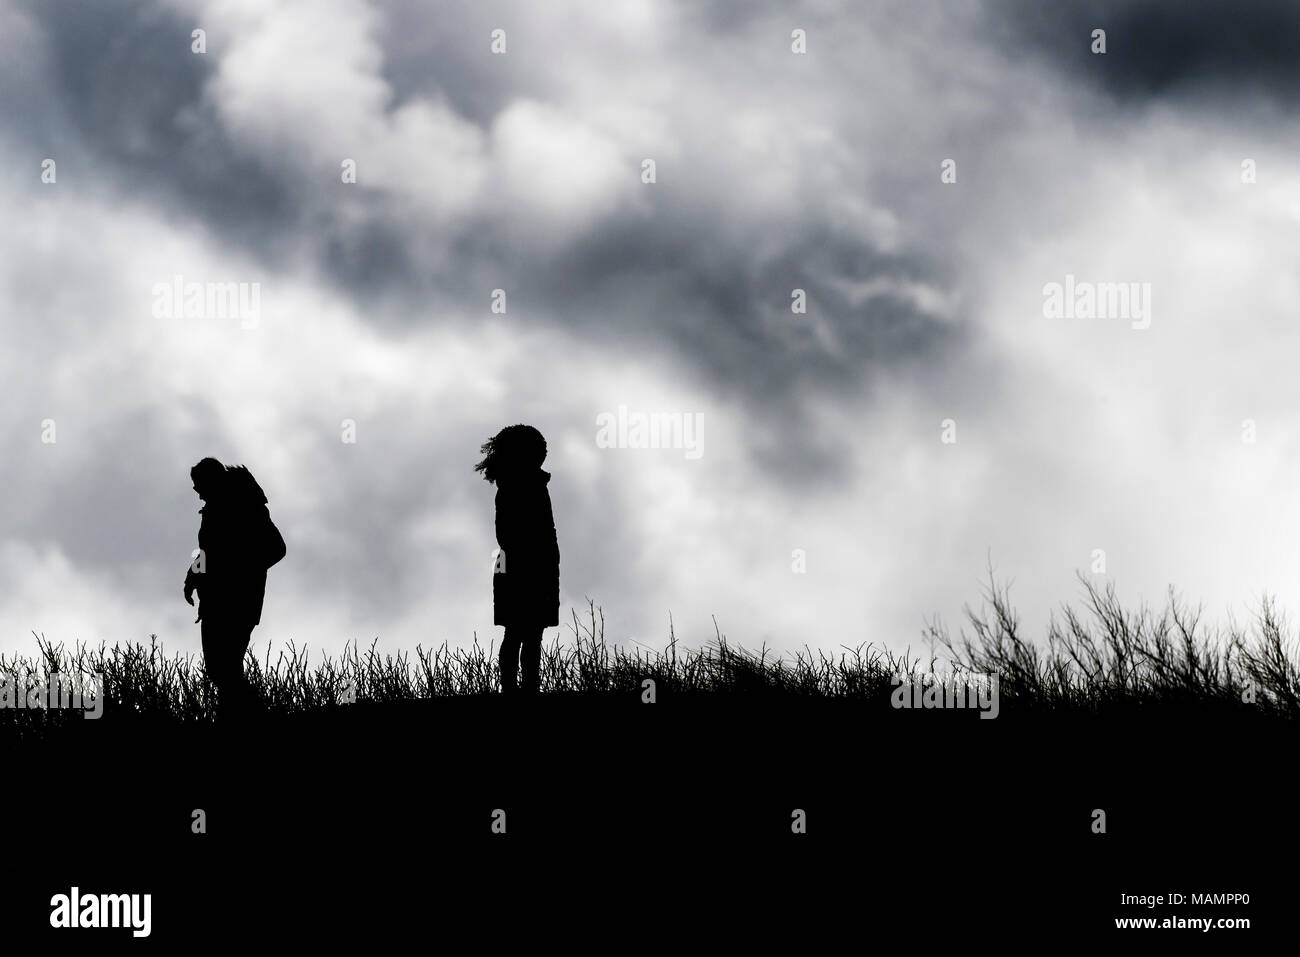 La silhouette di persone in piedi contro un cielo nuvoloso. Foto Stock